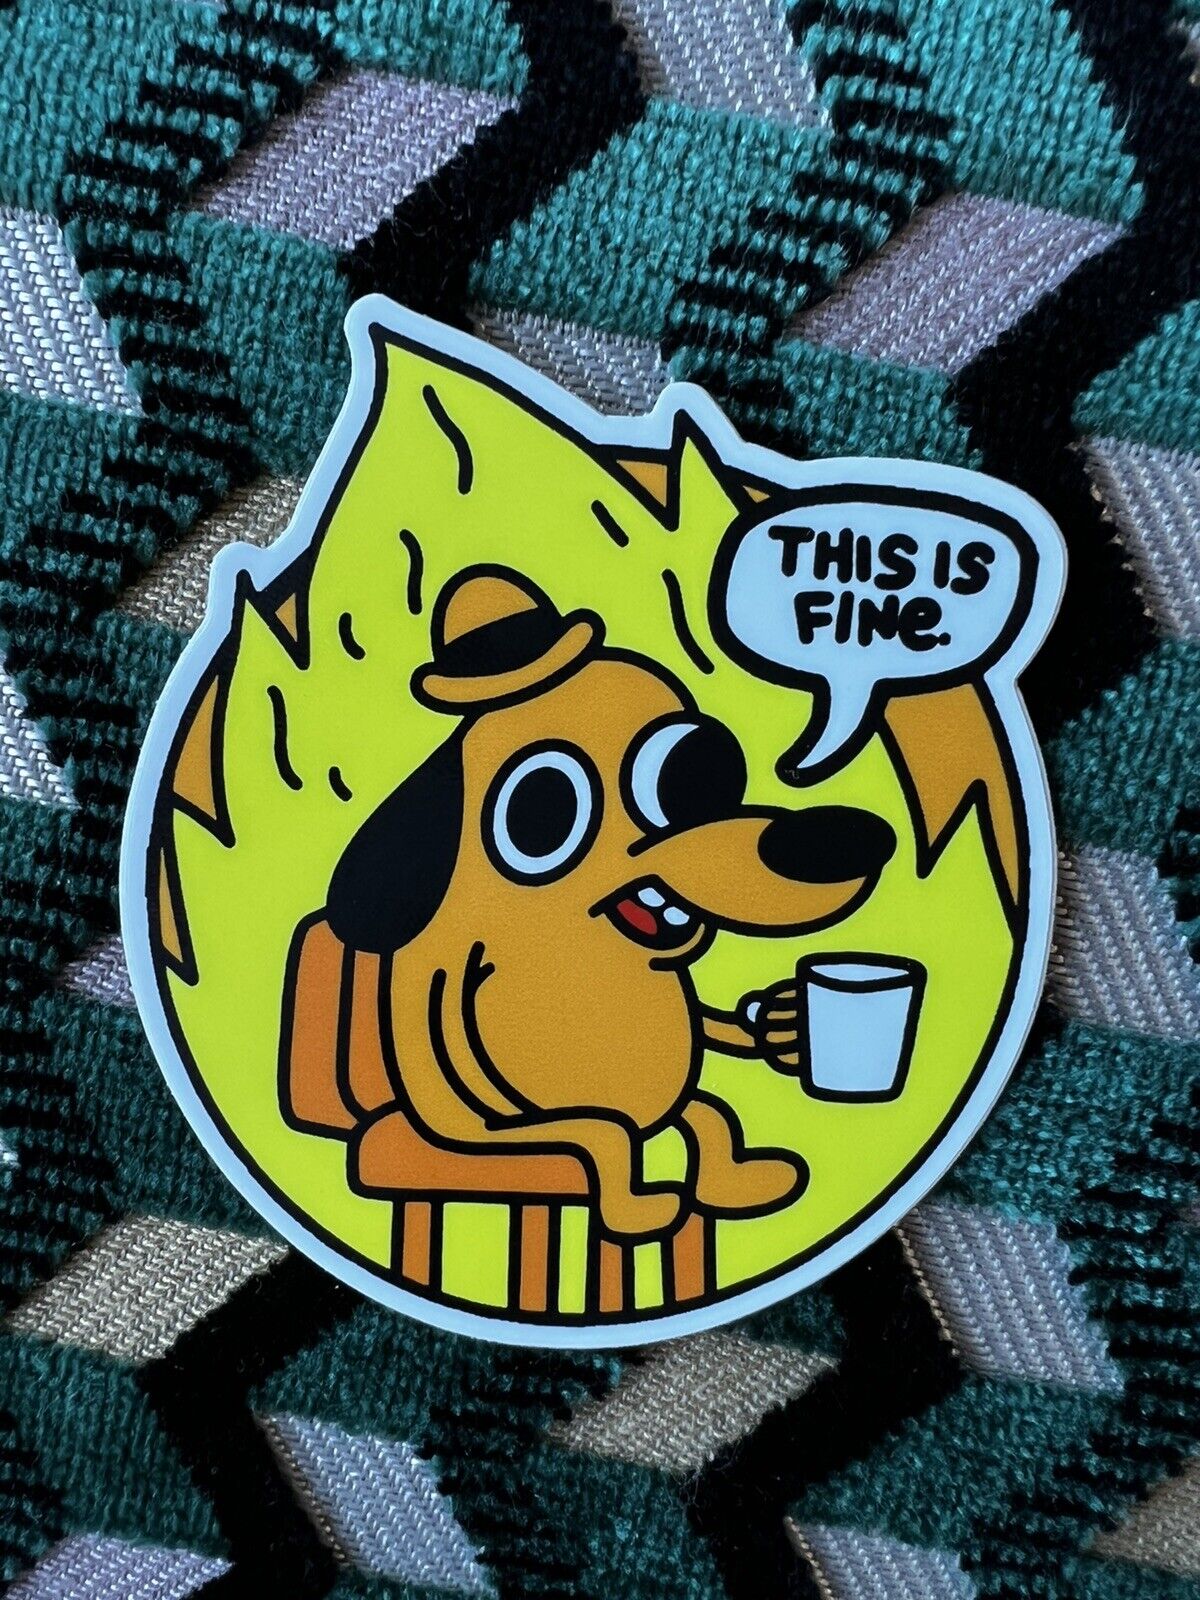 🔥This is Fine Vinyl Sticker 🔥Limited Run Diecut Laptop Fire Dog Meme Round